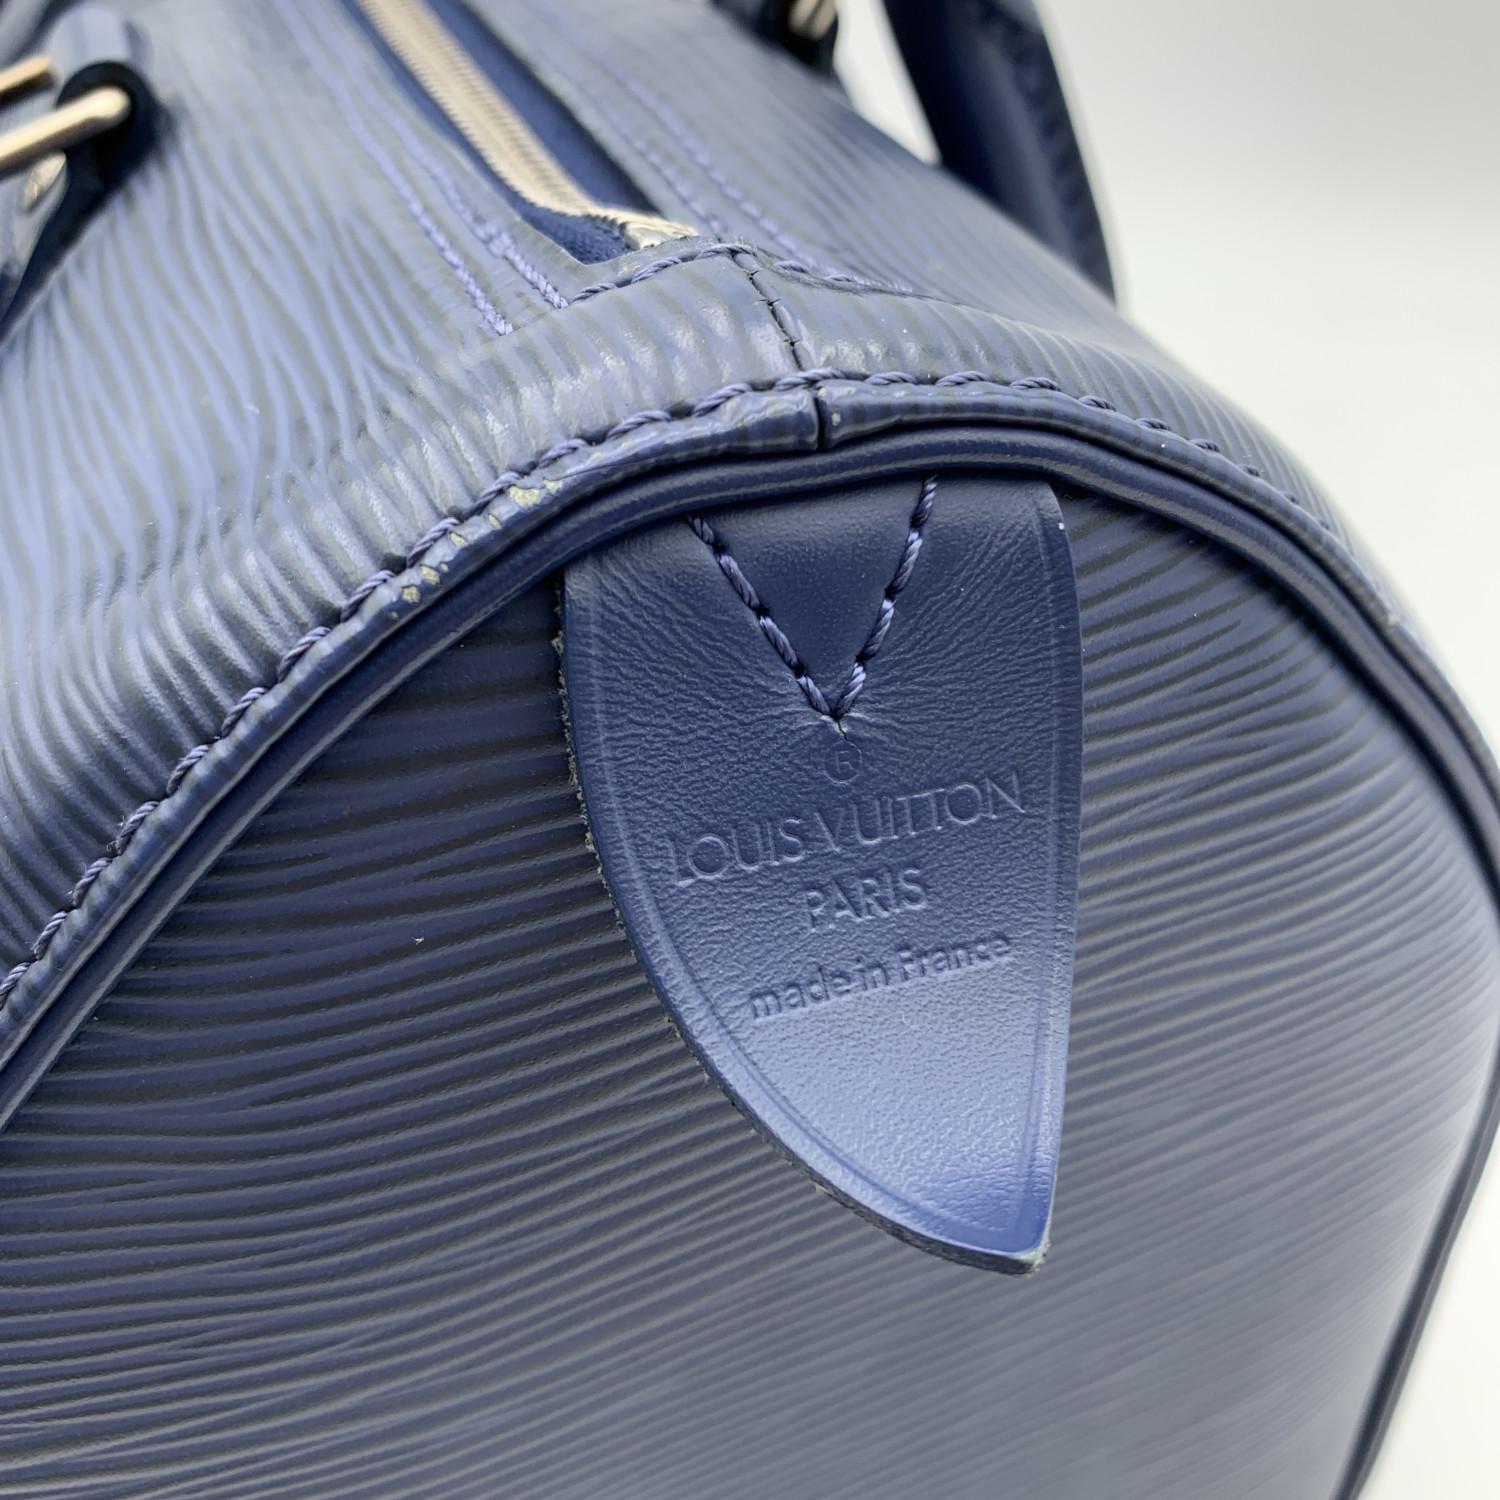 Louis Vuitton Toledo Blue Epi Leather Speedy 25 Boston Bag Handbag 4